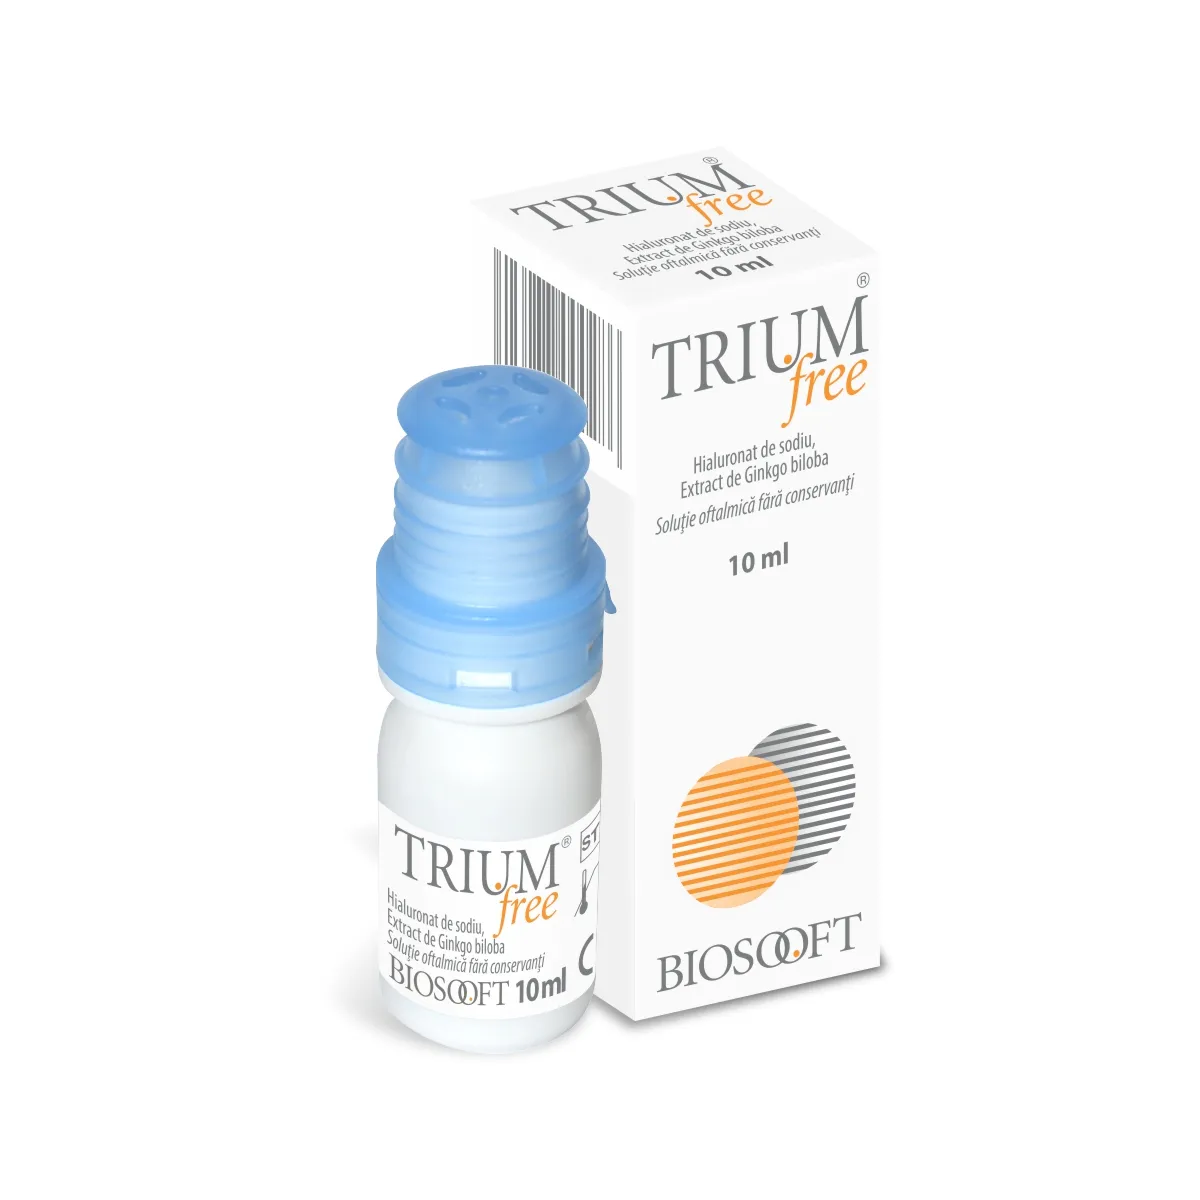 Trium free picaturi oftalmice, 10 ml, Biosooft